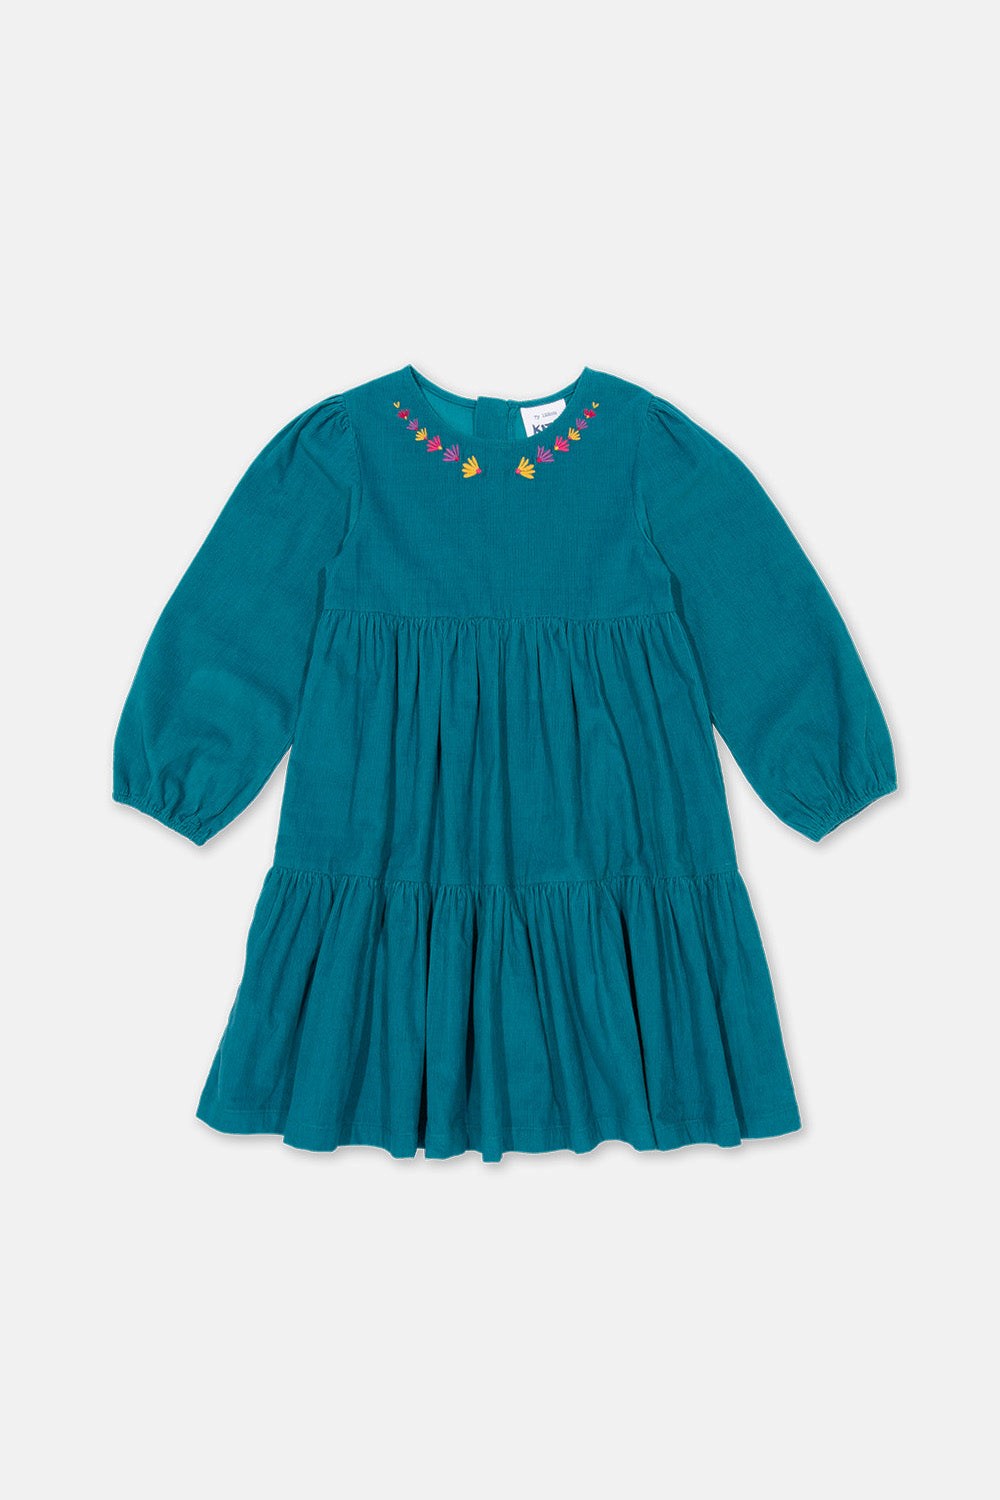 Waterfall Baby/Kids Organic Cotton Dress -